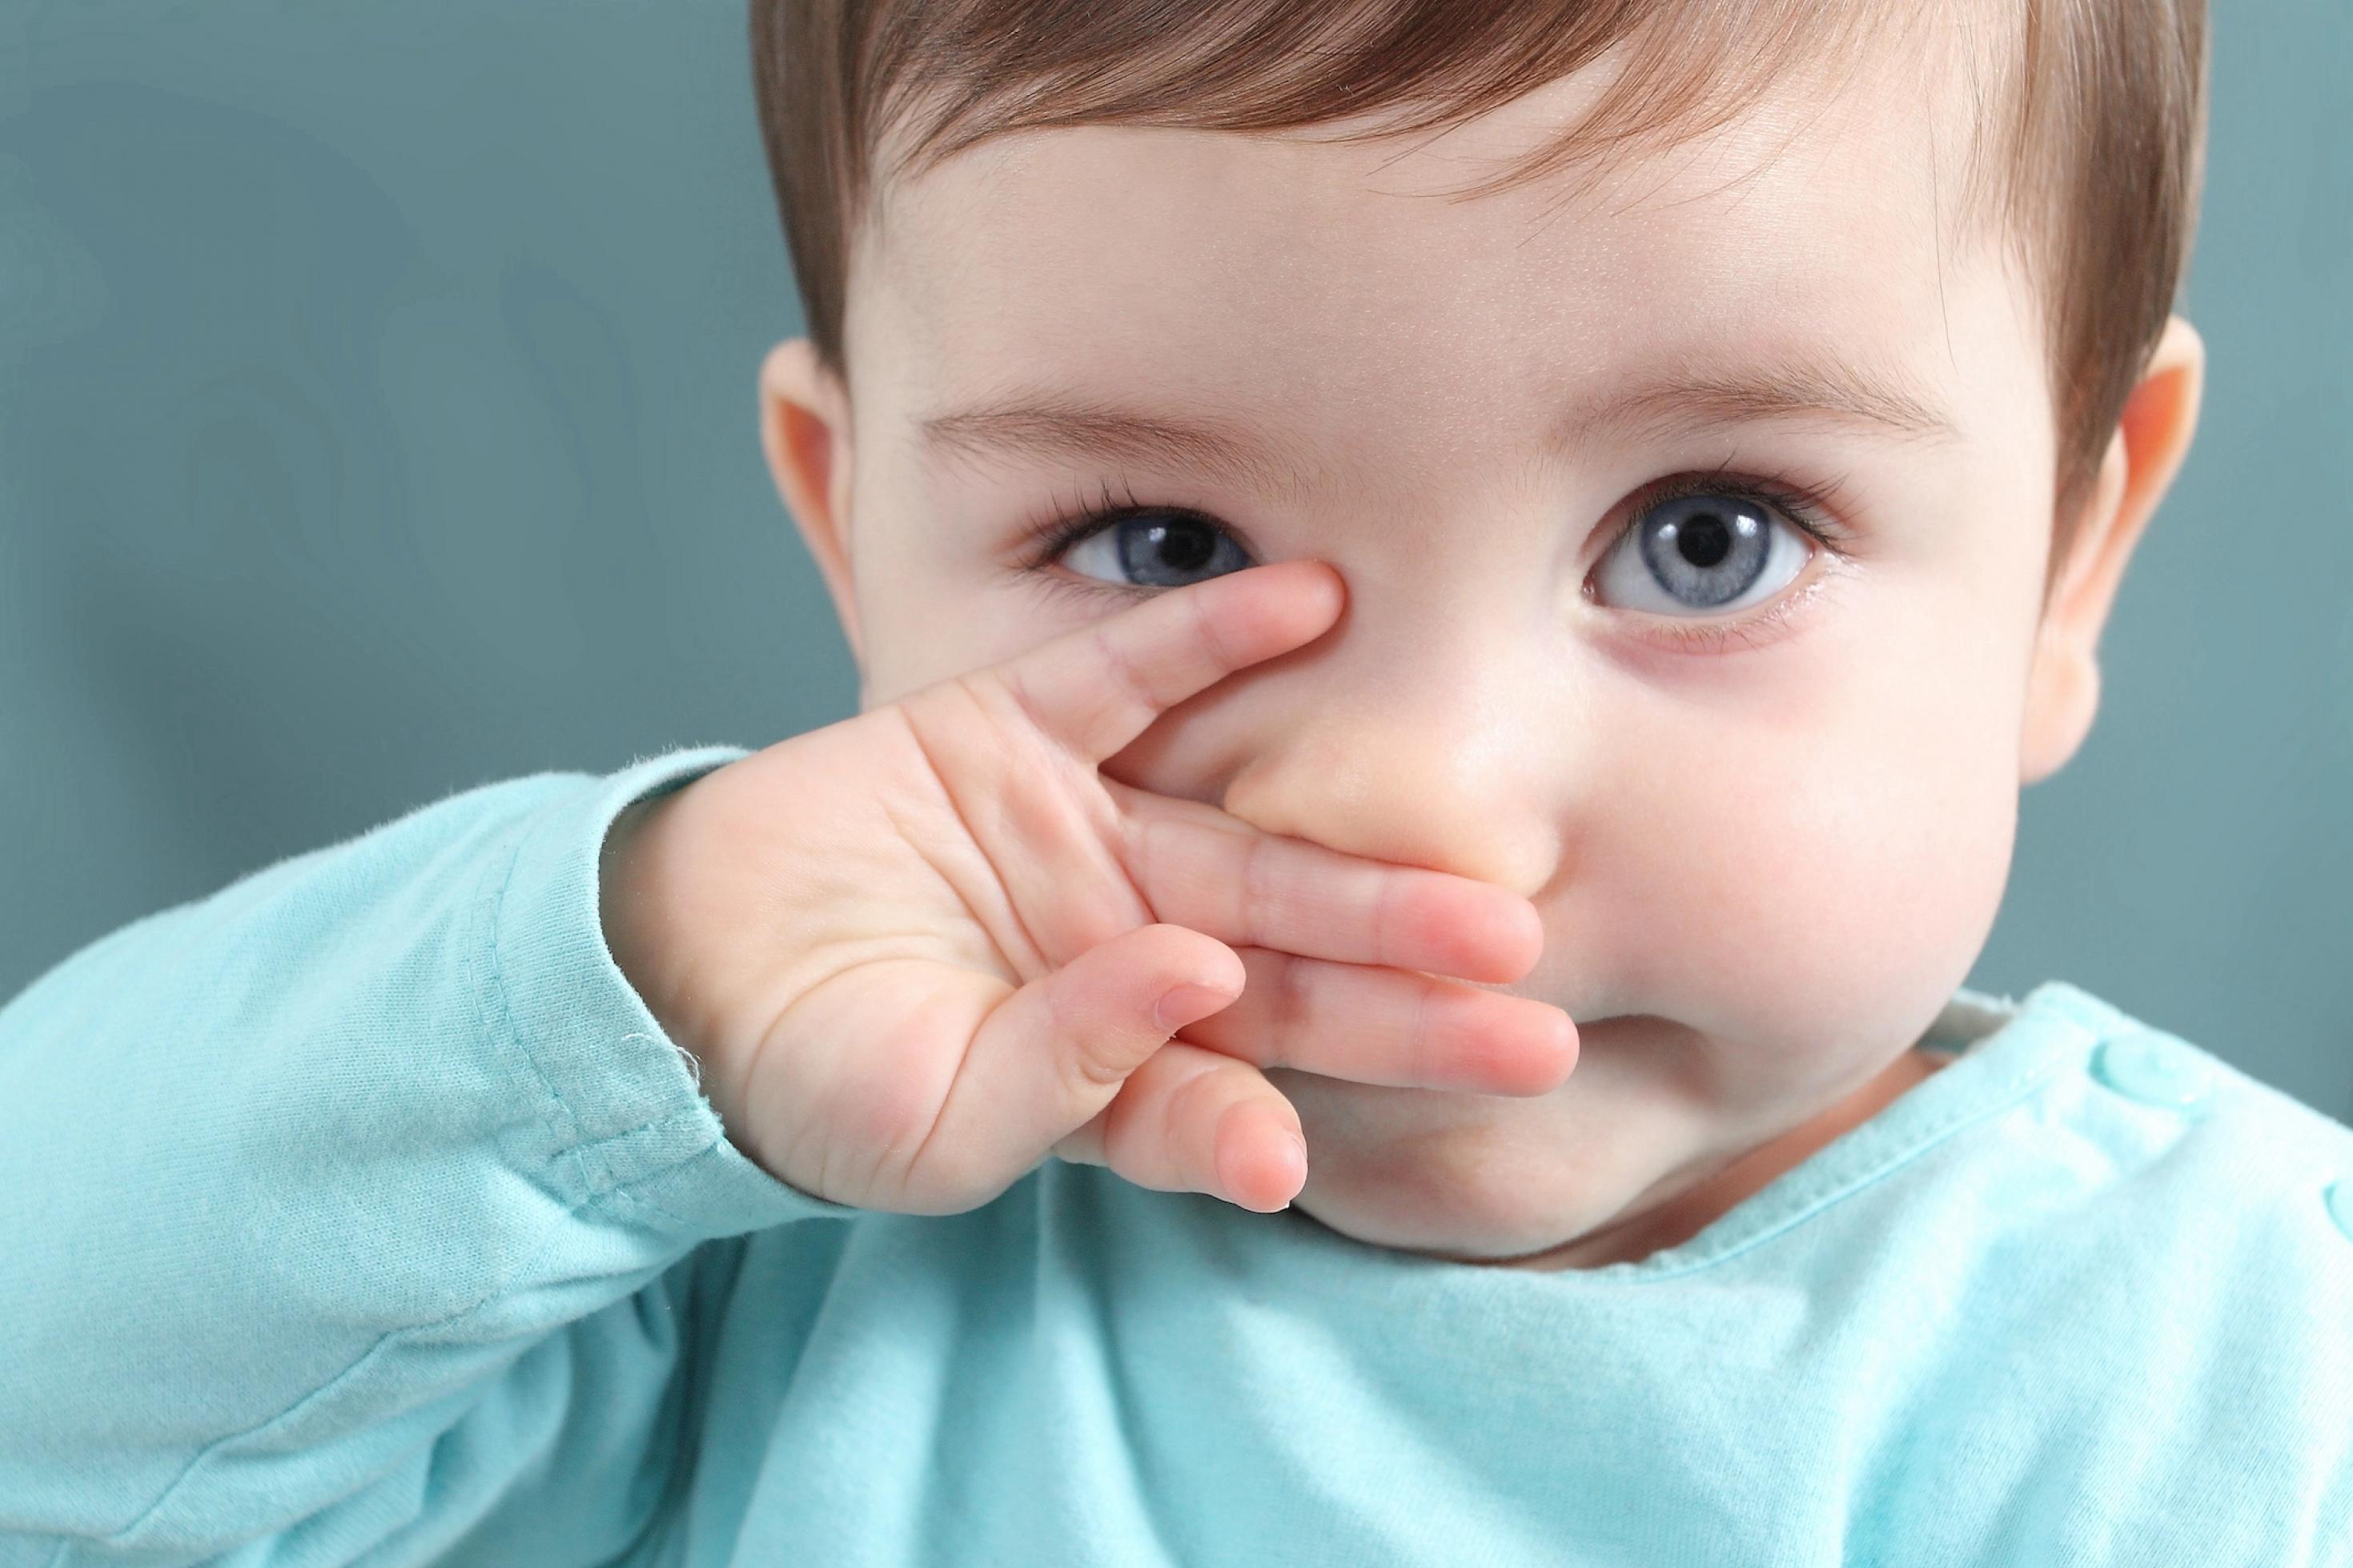 Ein kleines Kind mit blauen Augen und glatten braunen Haaren schaut in die Kamera. Mit der rechte Hand wischt es sich gerade über die Nase.